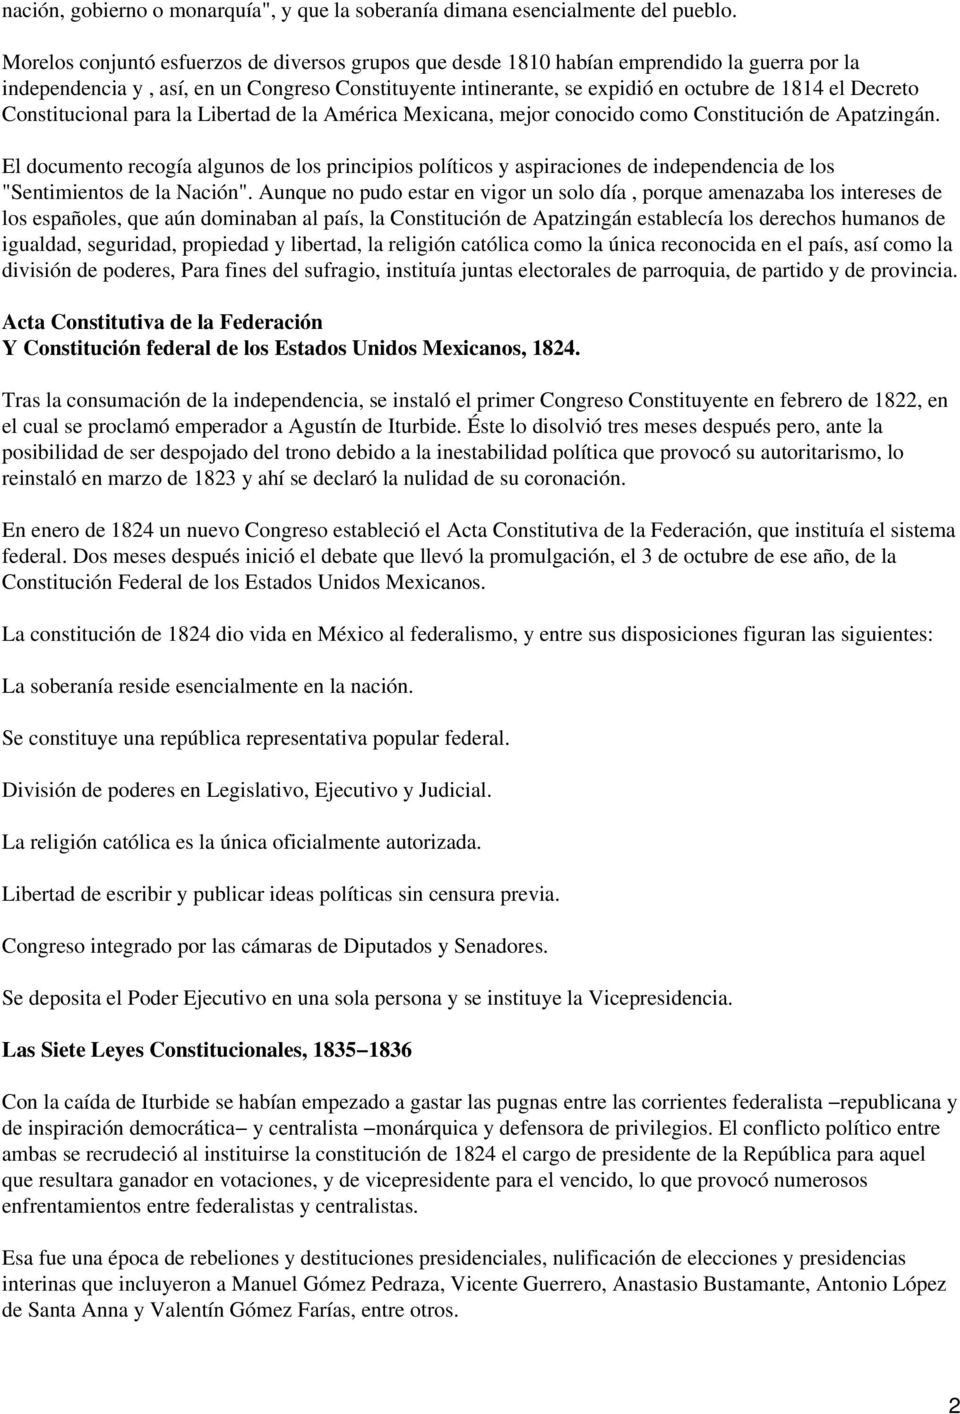 Decreto Constitucional para la Libertad de la América Mexicana, mejor conocido como Constitución de Apatzingán.